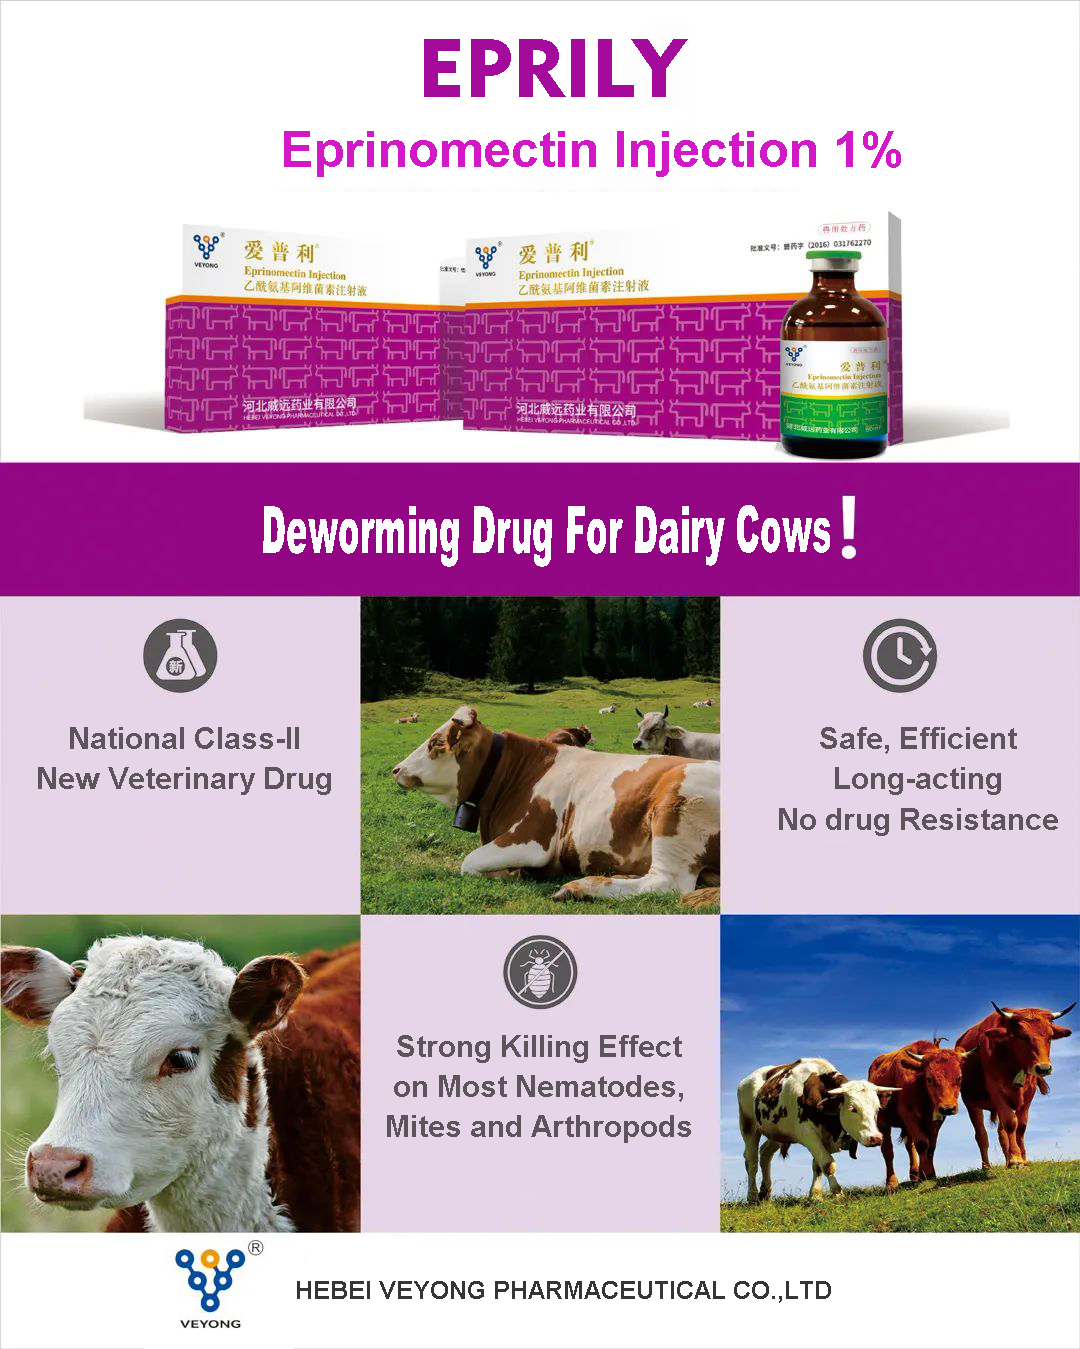 https://www.veyongpharma.com/copy-eprinomectin-injection-1-product/